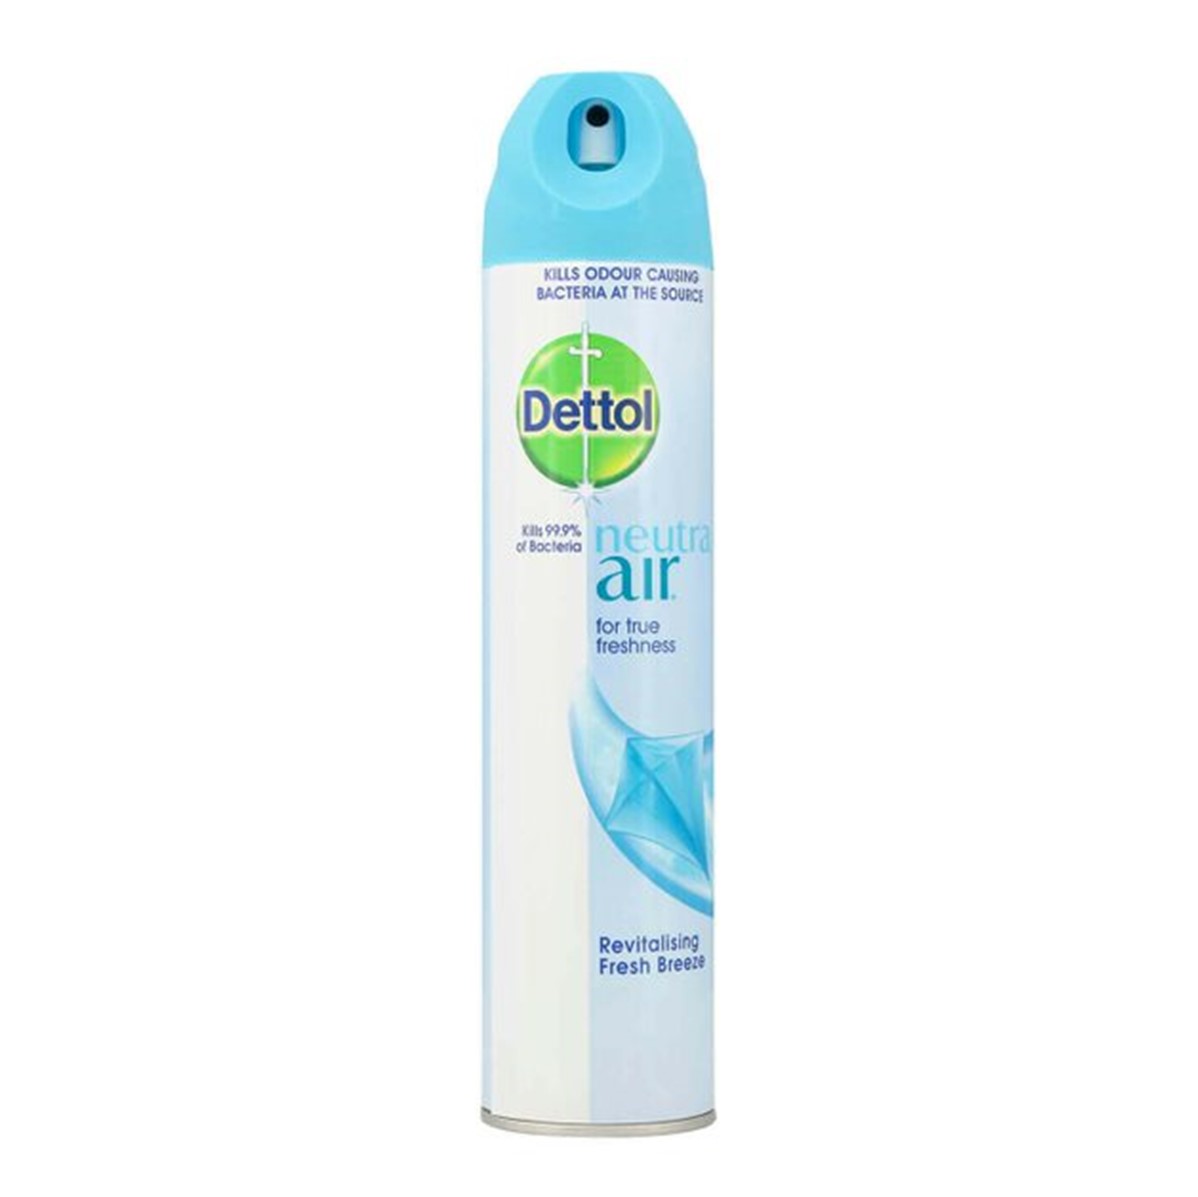 Dettol Neutra Air Freshener Breeze - 300ml aerosol